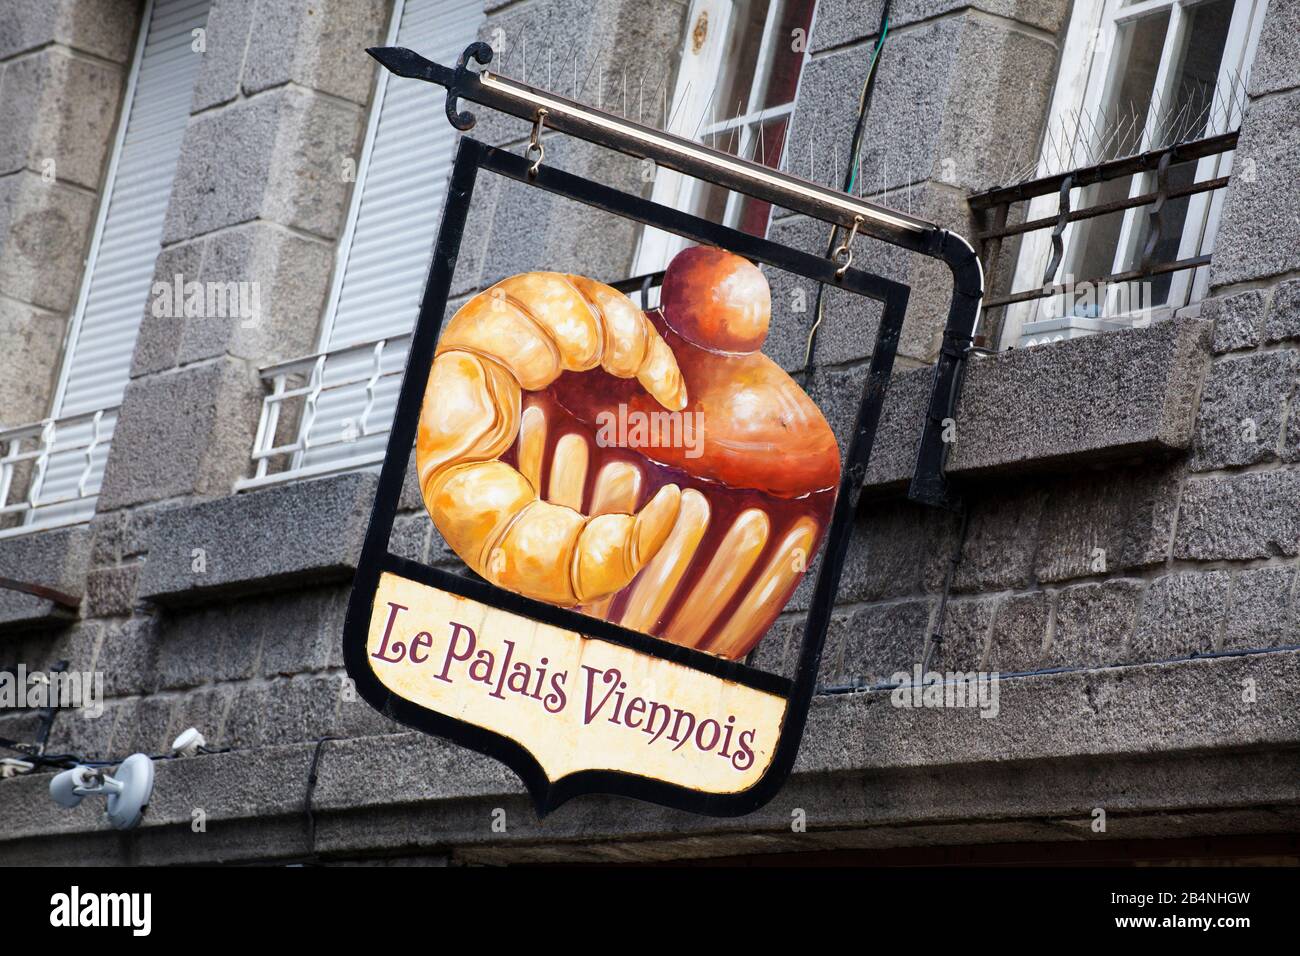 Saint-Malo ist eine Hafenstadt an der Cote d-'Emeraude in der Bretagne im Nordwesten Frankreichs. Typische Zünfte - auch Nasenschilde genannt - sind in der Altstadt zu finden. Stockfoto